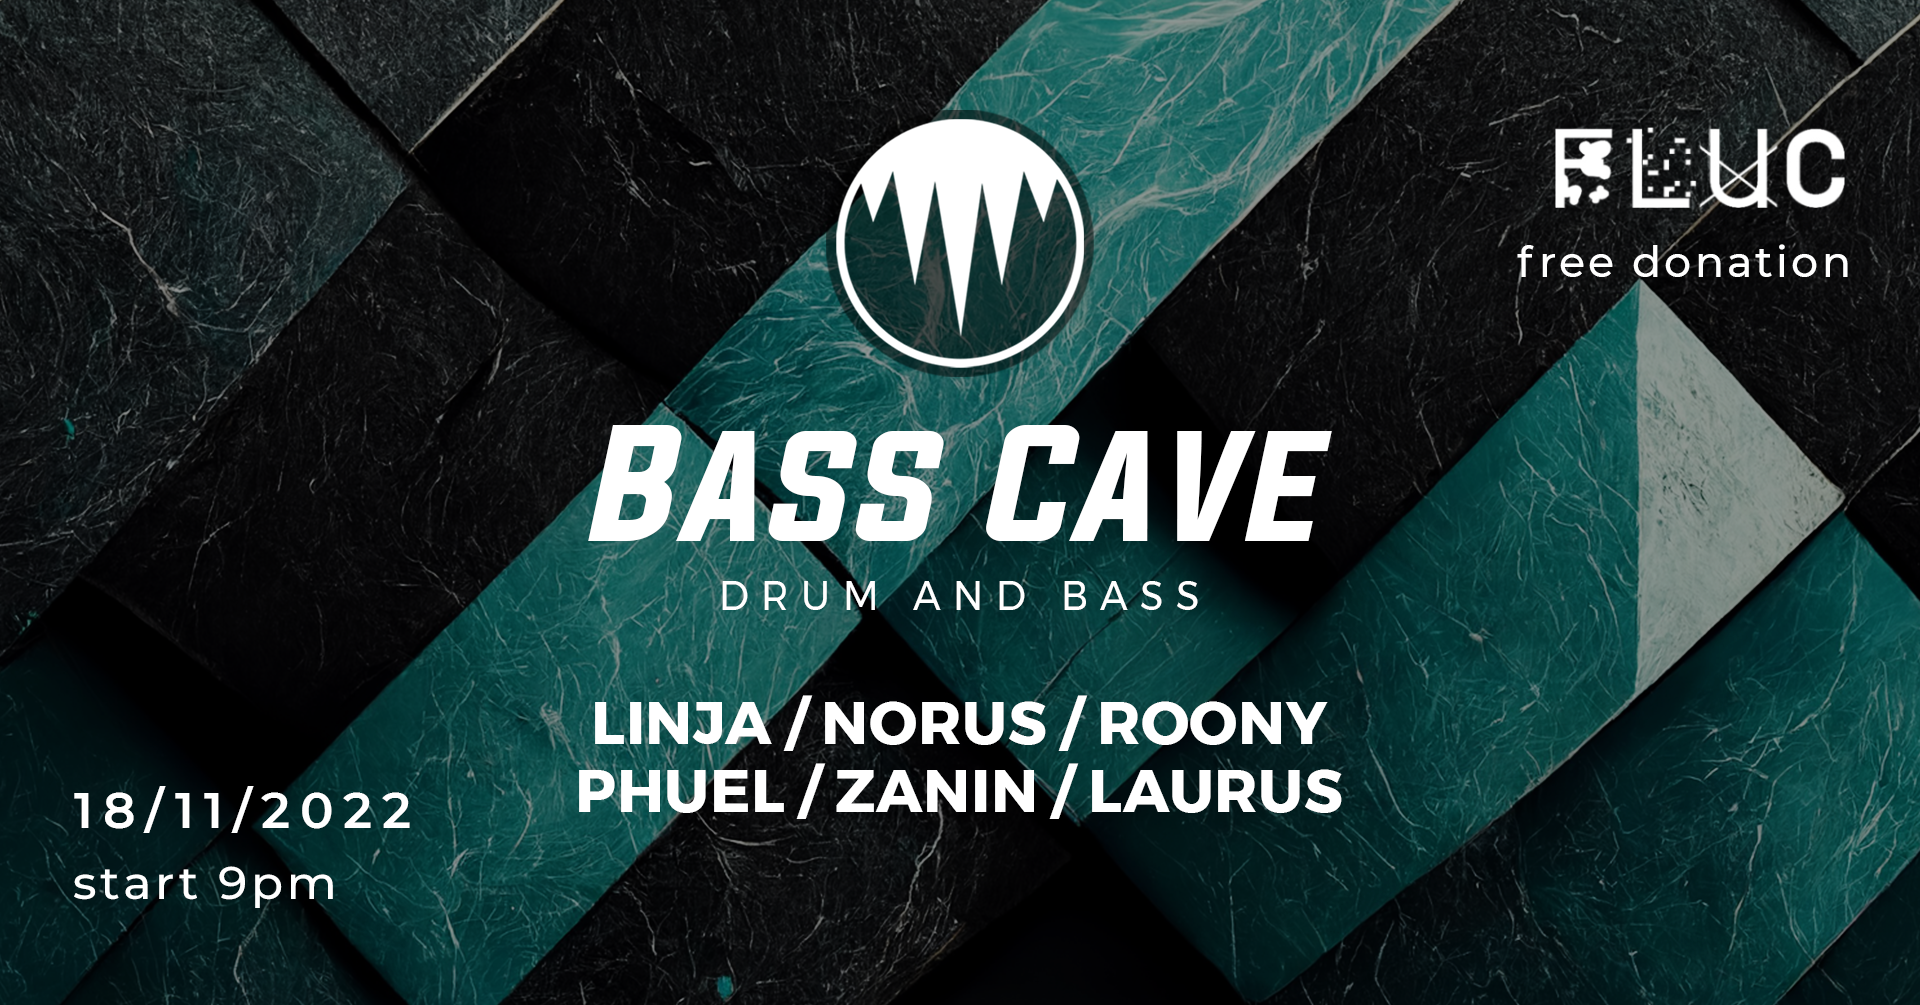 Bass Cave - Drum and Bass /w Linja & Norus am 18. November 2022 @ Fluc.